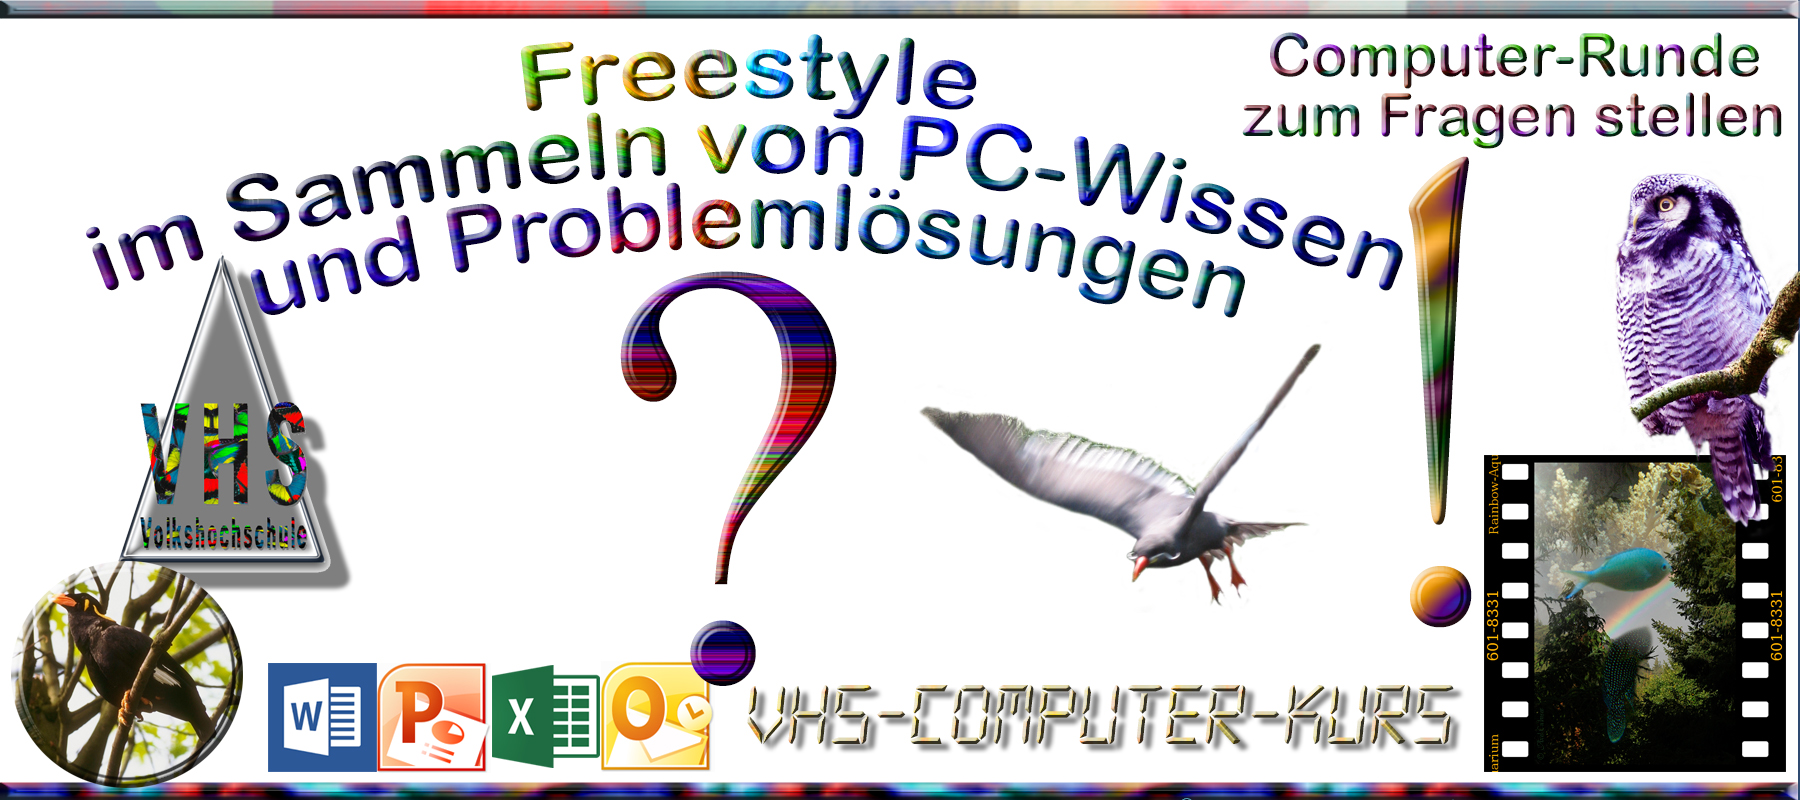 Freestyle im Sammeln von PC-Wissen und Problemlösungen - Computer-Runde zum Fragen stellen